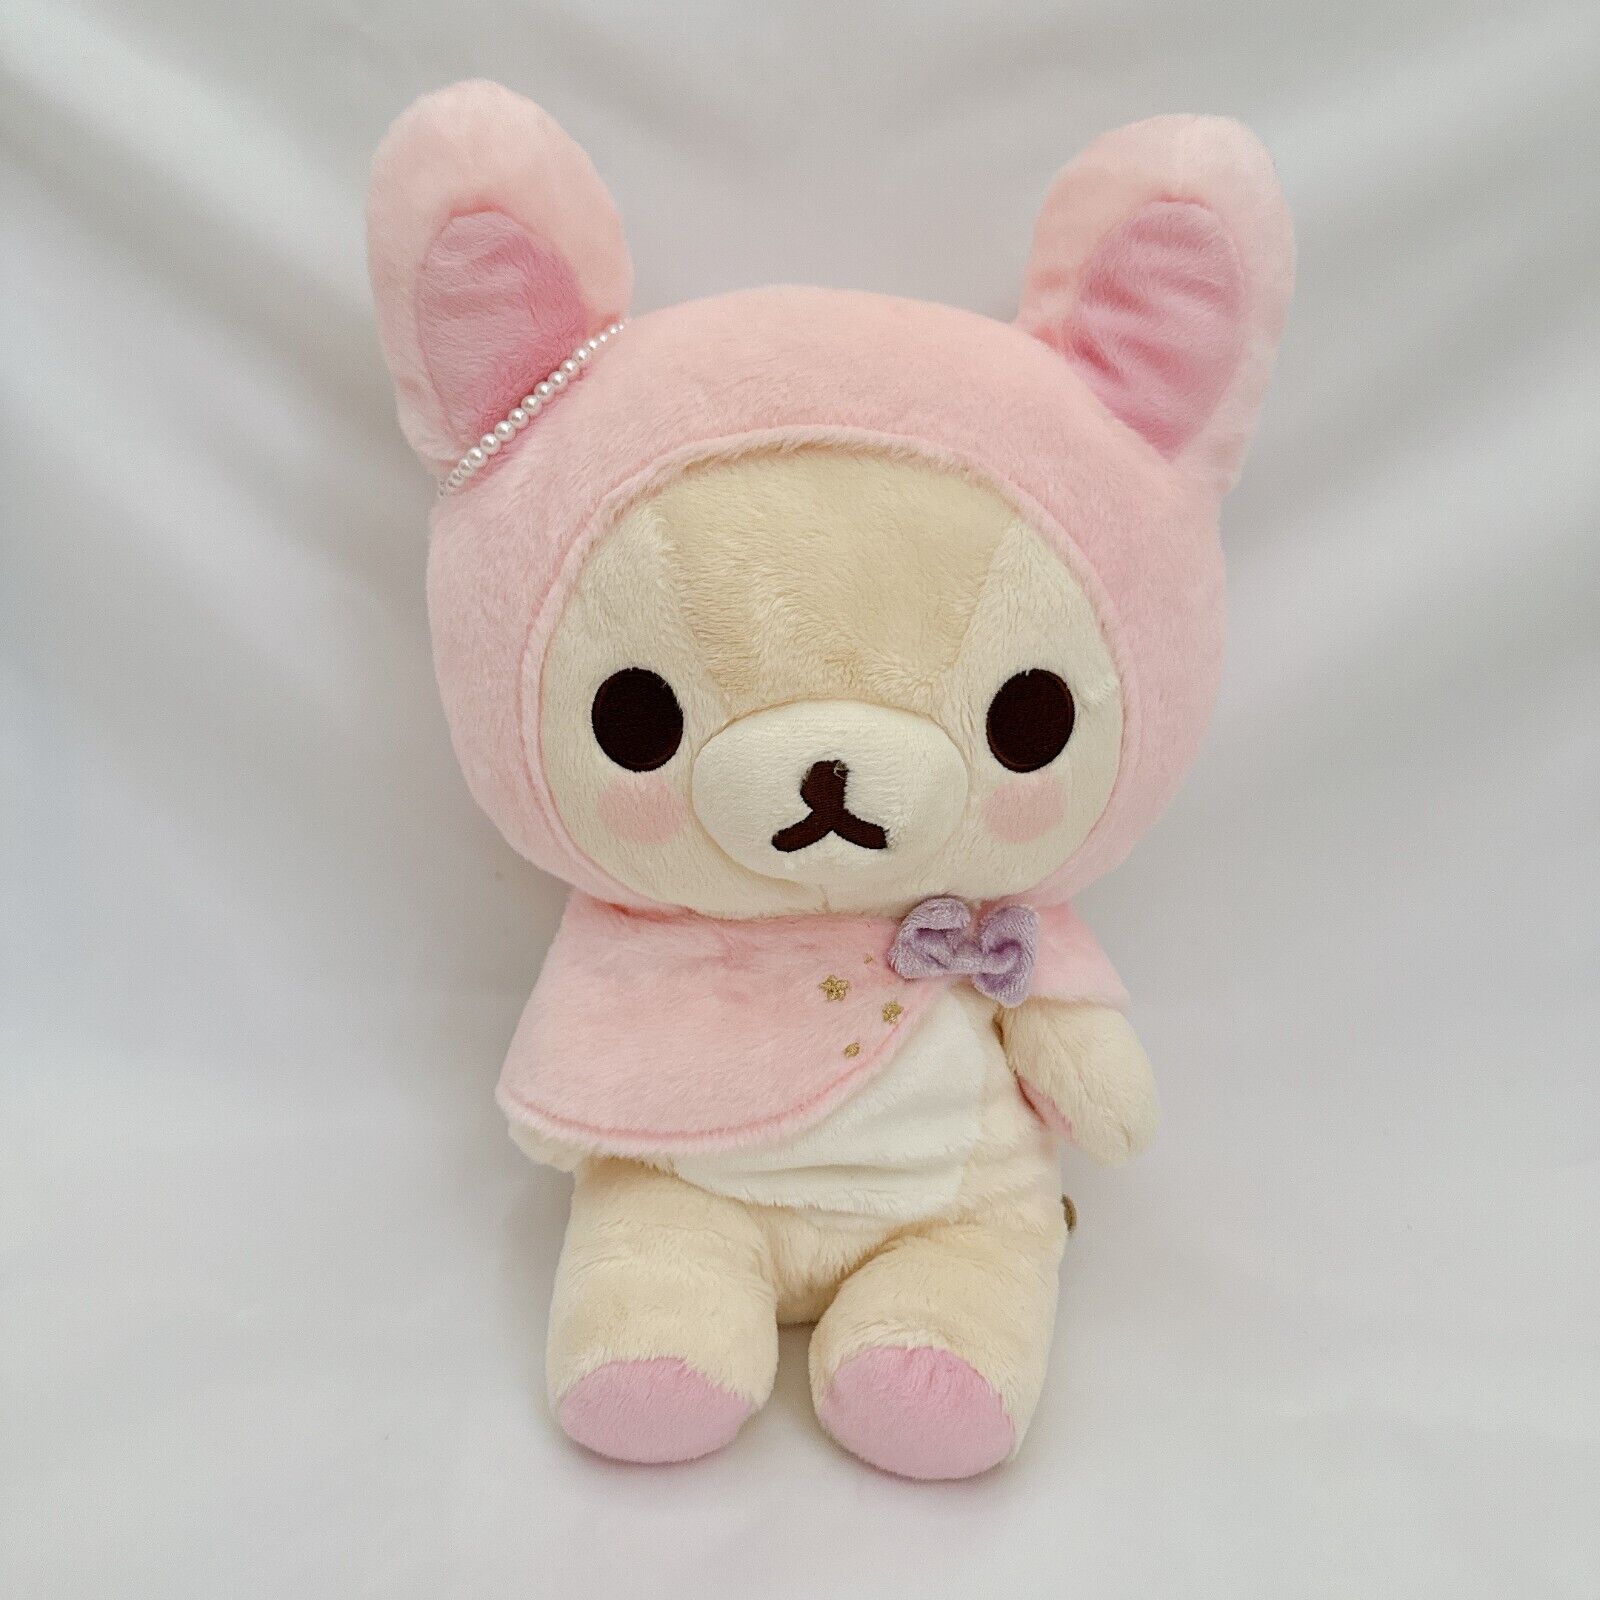 San-x Korilakkuma Sweet Dream Bunny Plush 2016 Size Medium Rilakkuma